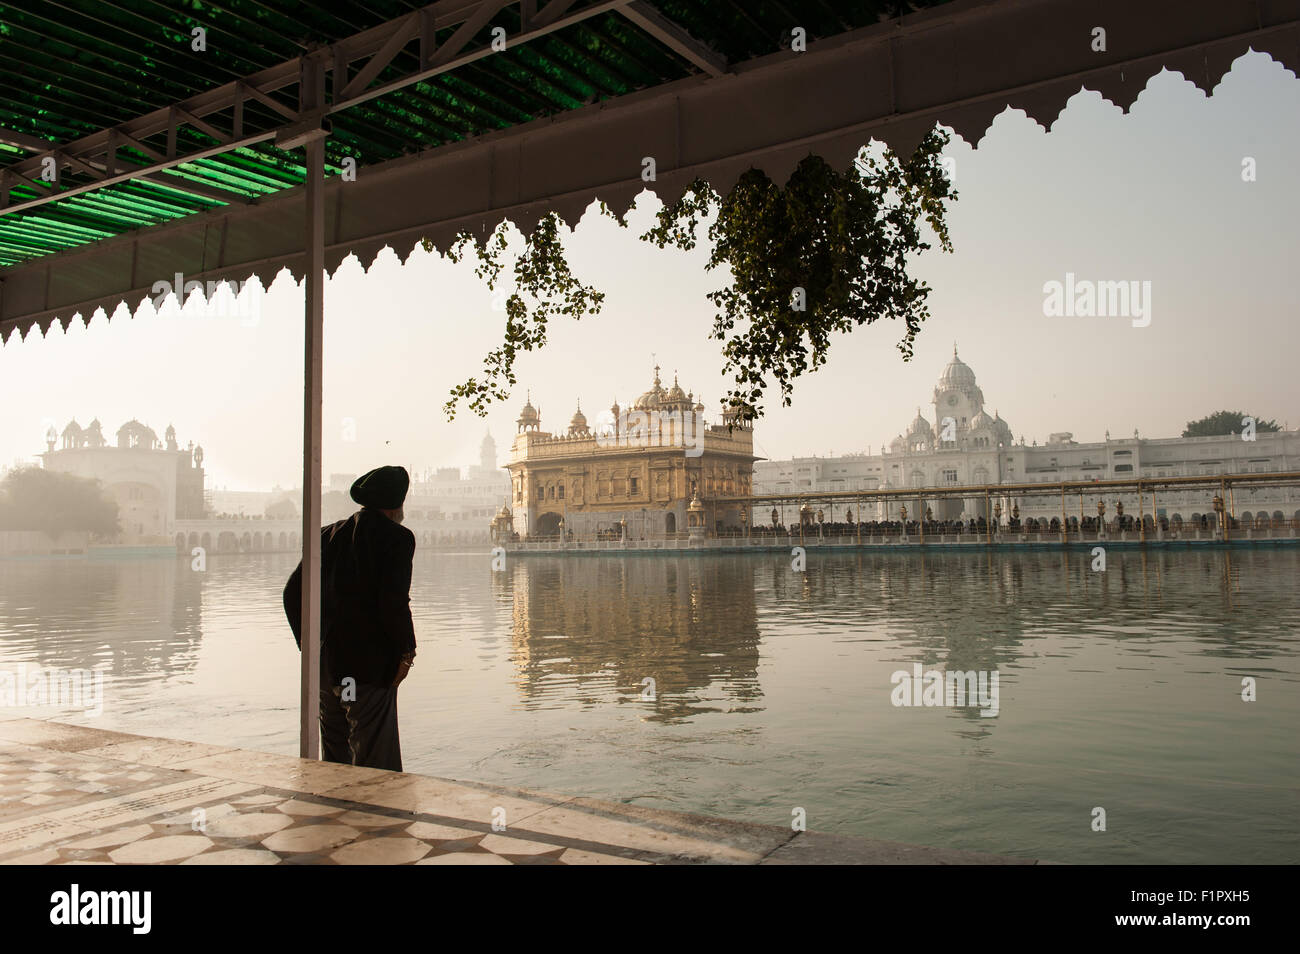 Amritsar, Punjab, en Inde. Le Temple d'Or - Harmandir Sahib - à l'aube avec un vieux bain Sikh ses pieds dans les eaux saintes. Banque D'Images